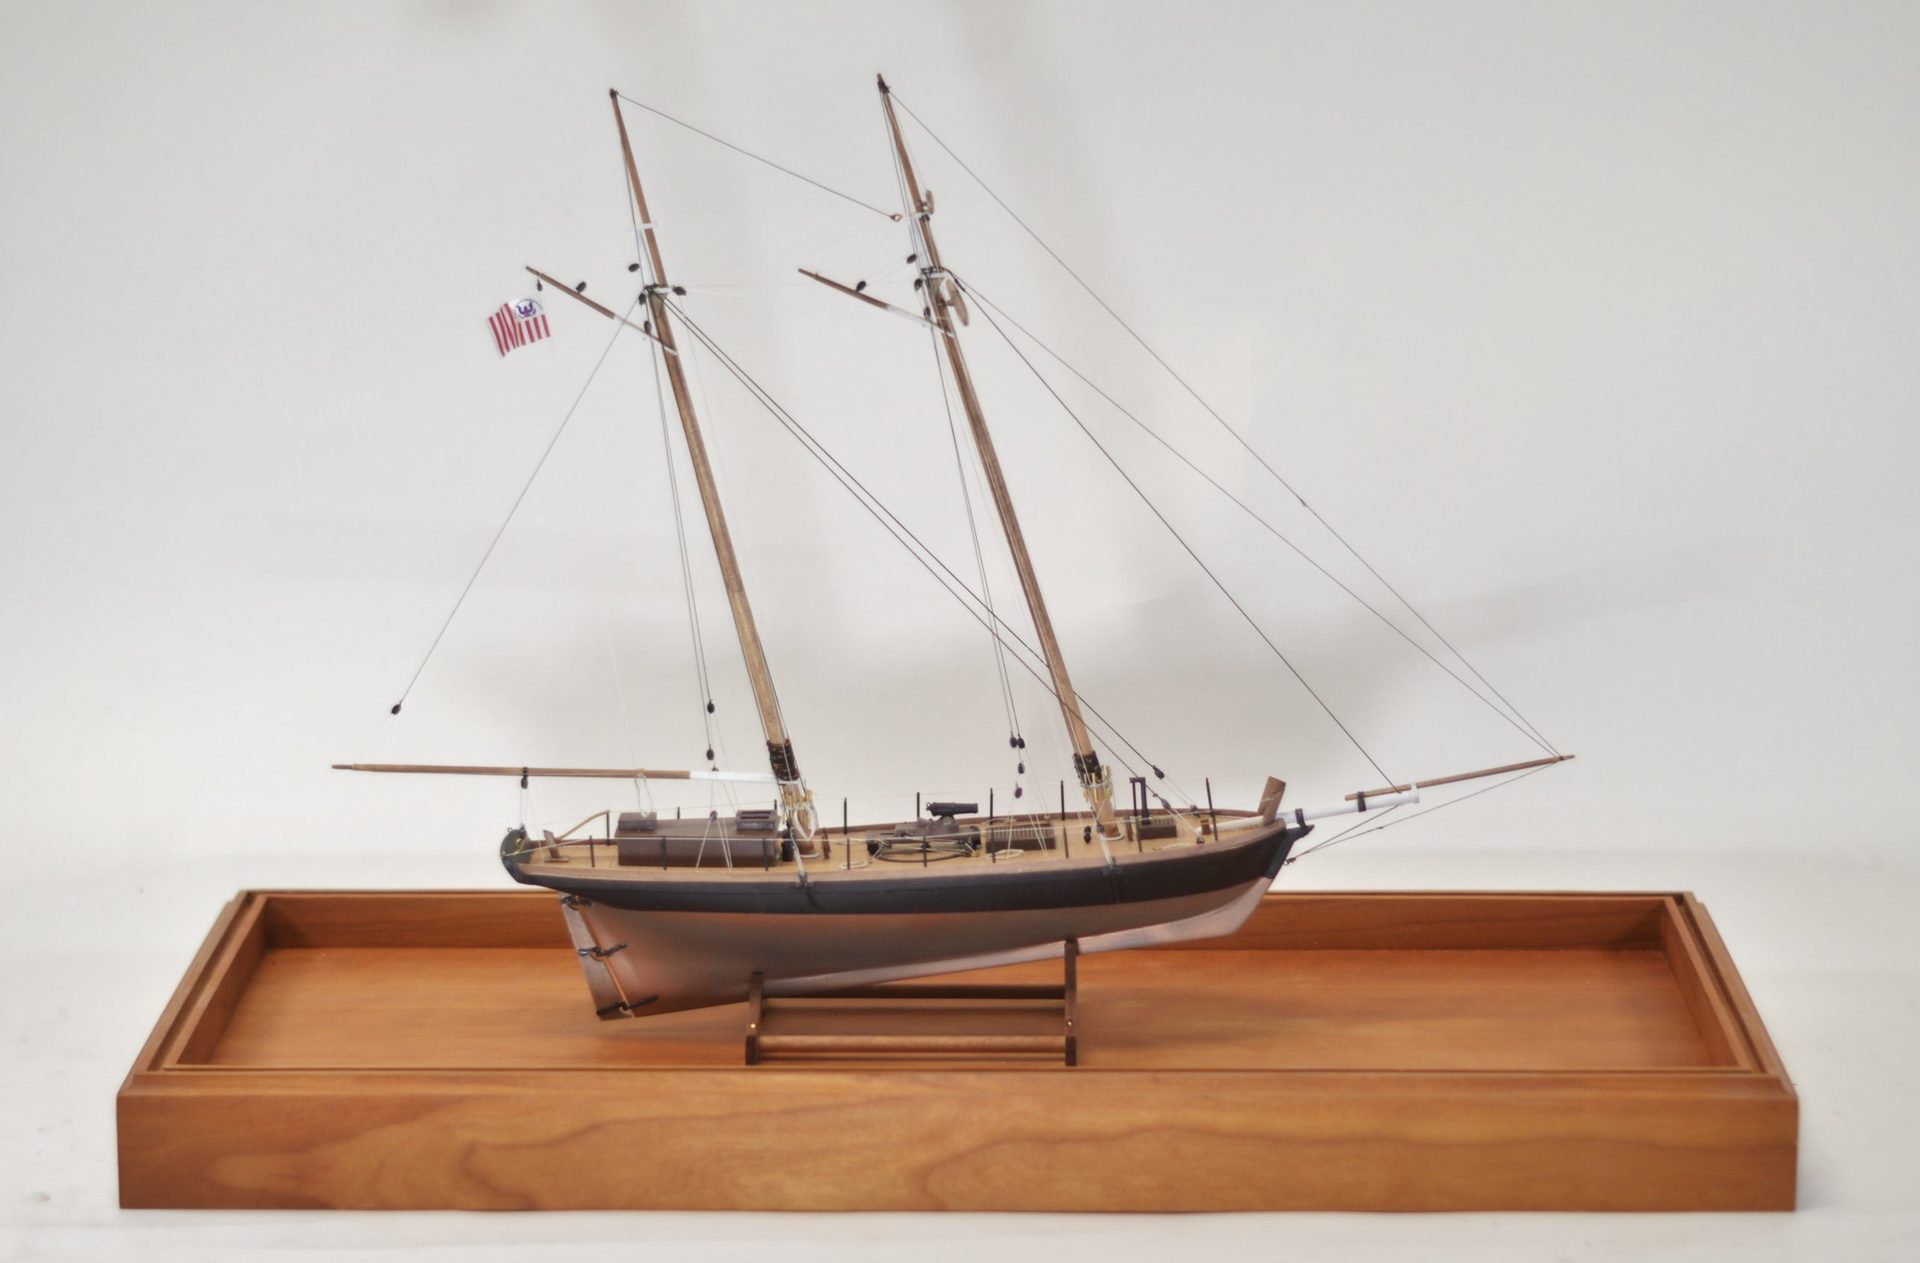 sailboat models to build